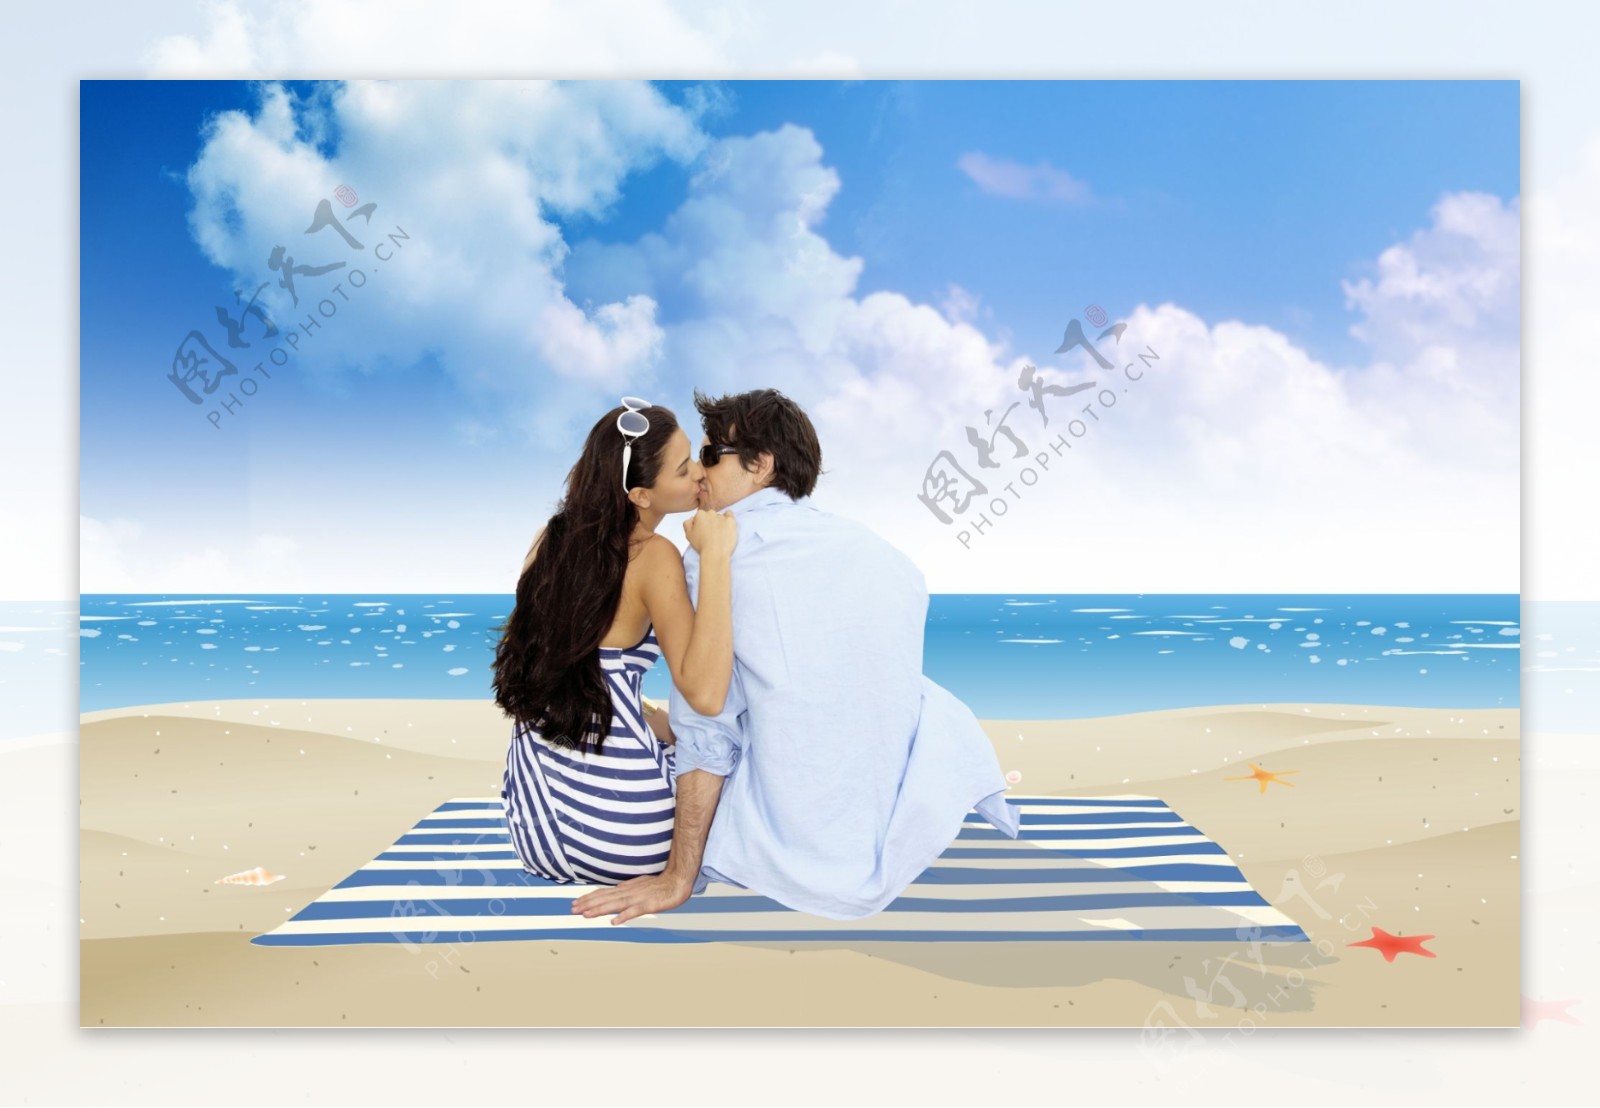 坐在海边沙滩上的情侣